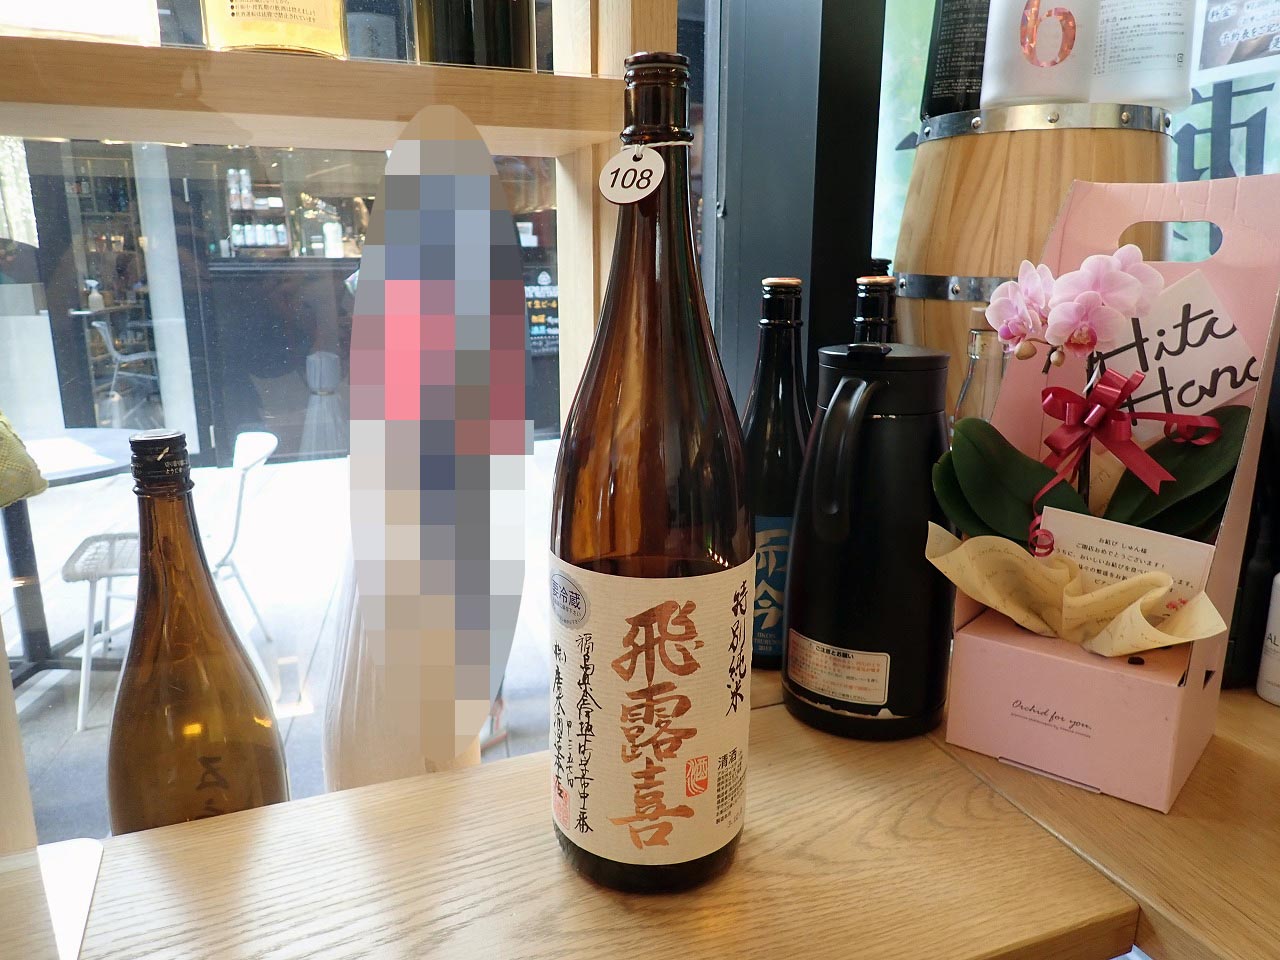 日本酒の「飛露喜 特別純米」です